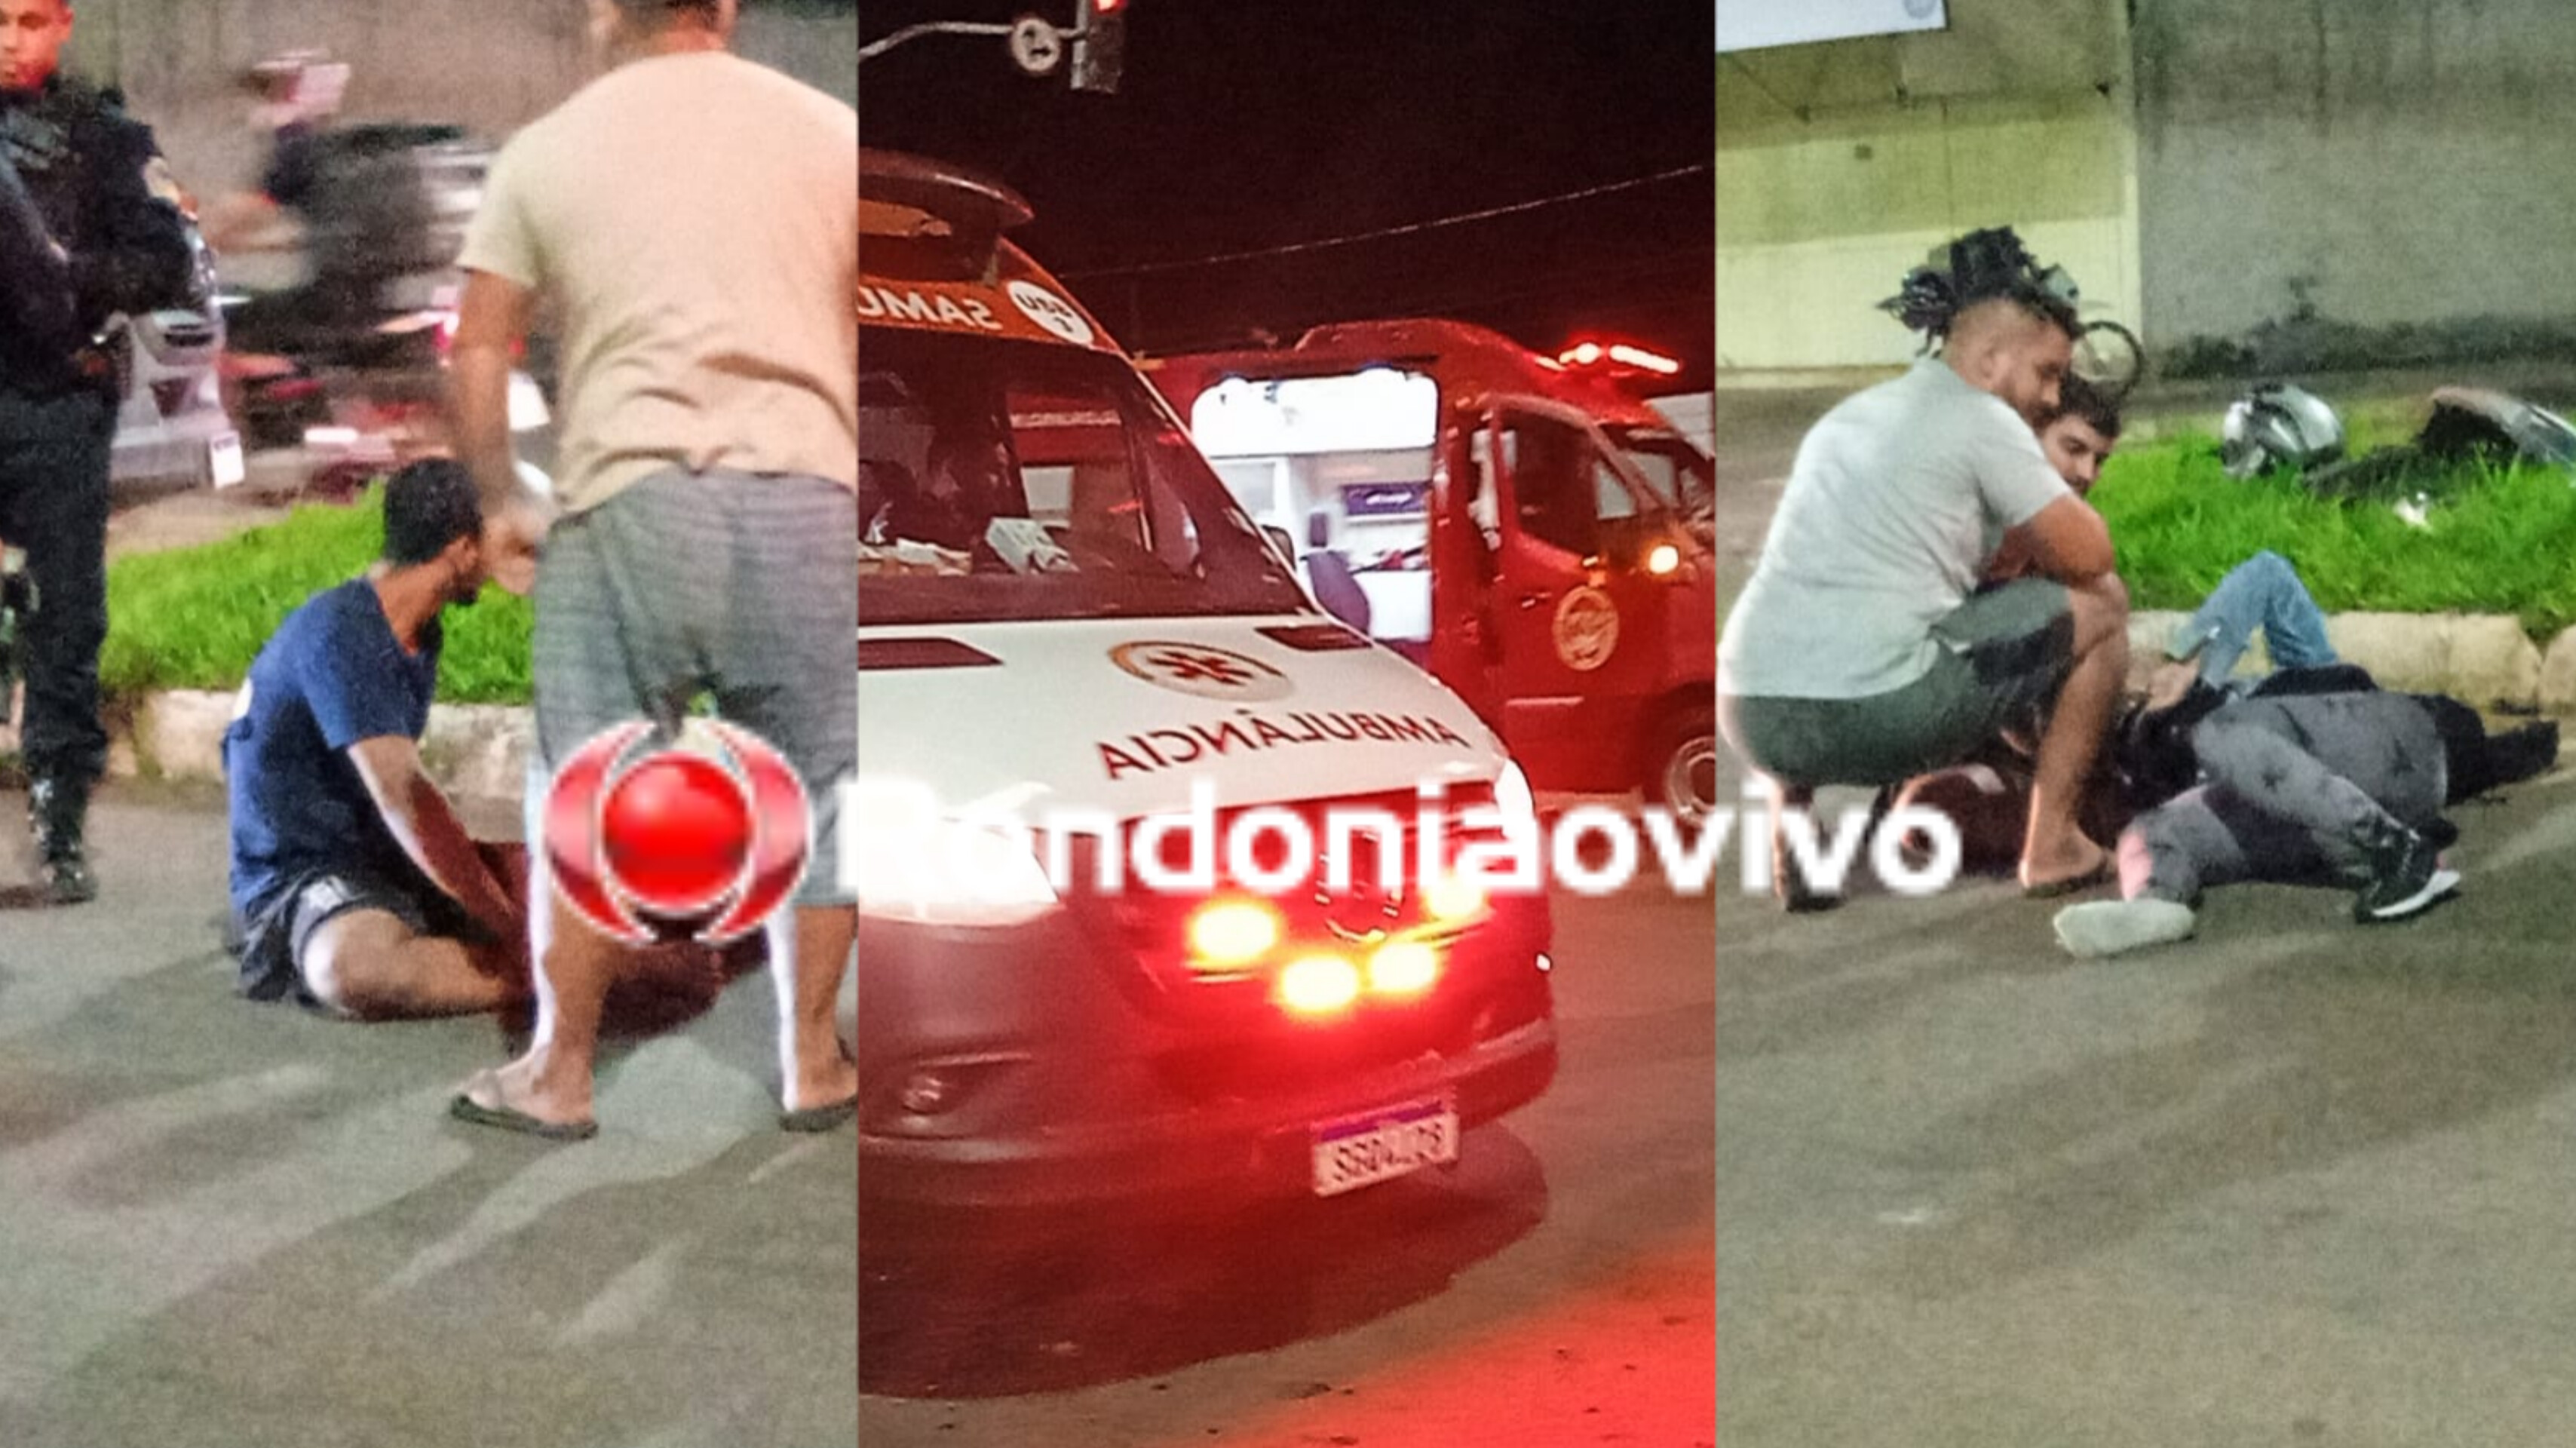 TRÂNSITO: Atropelamento em semáforo deixa casal com fraturas na Avenida Guaporé 